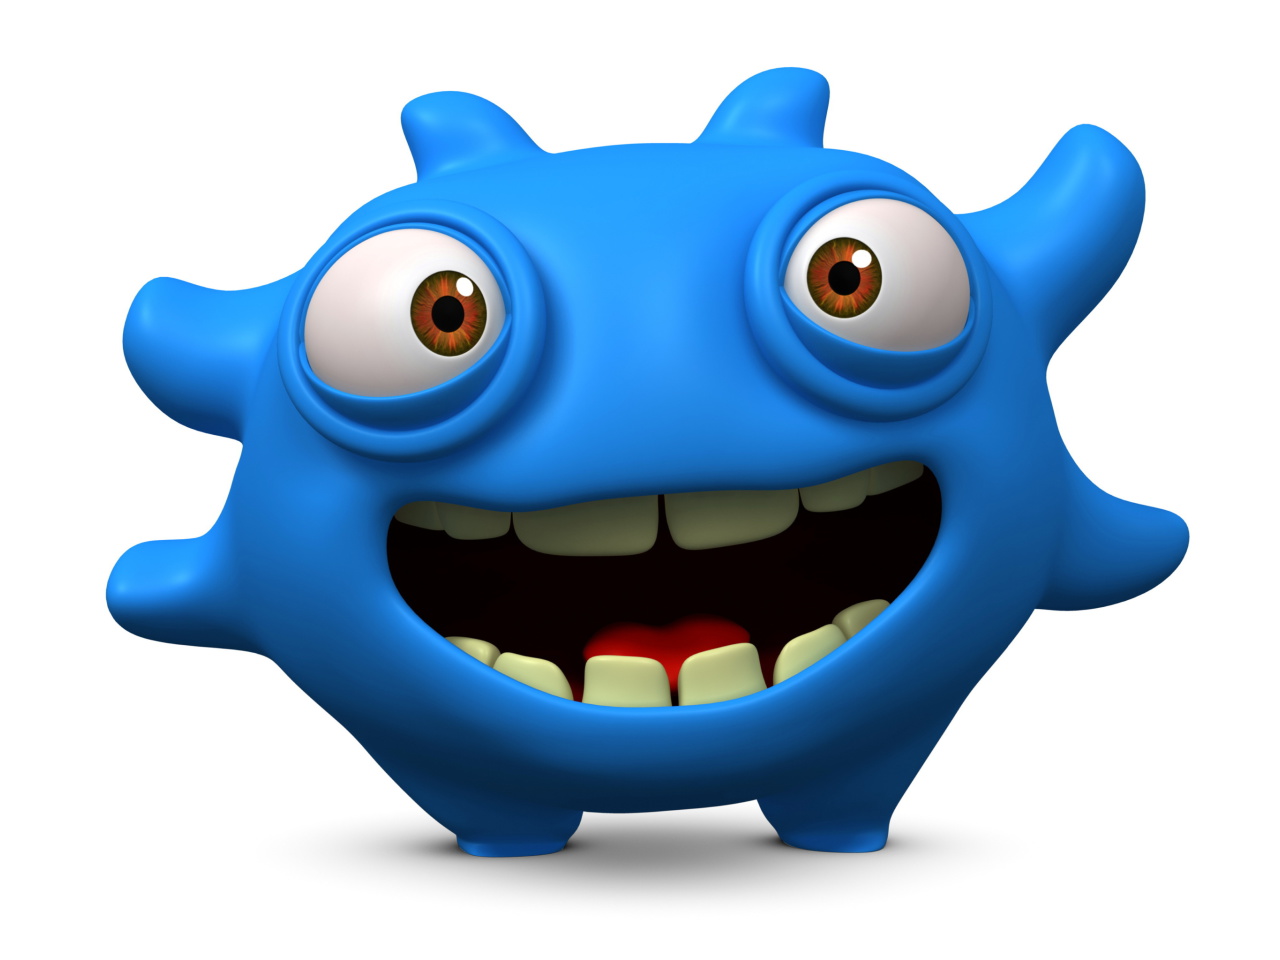 Das Cute Blue Cartoon Monster Wallpaper 1280x960